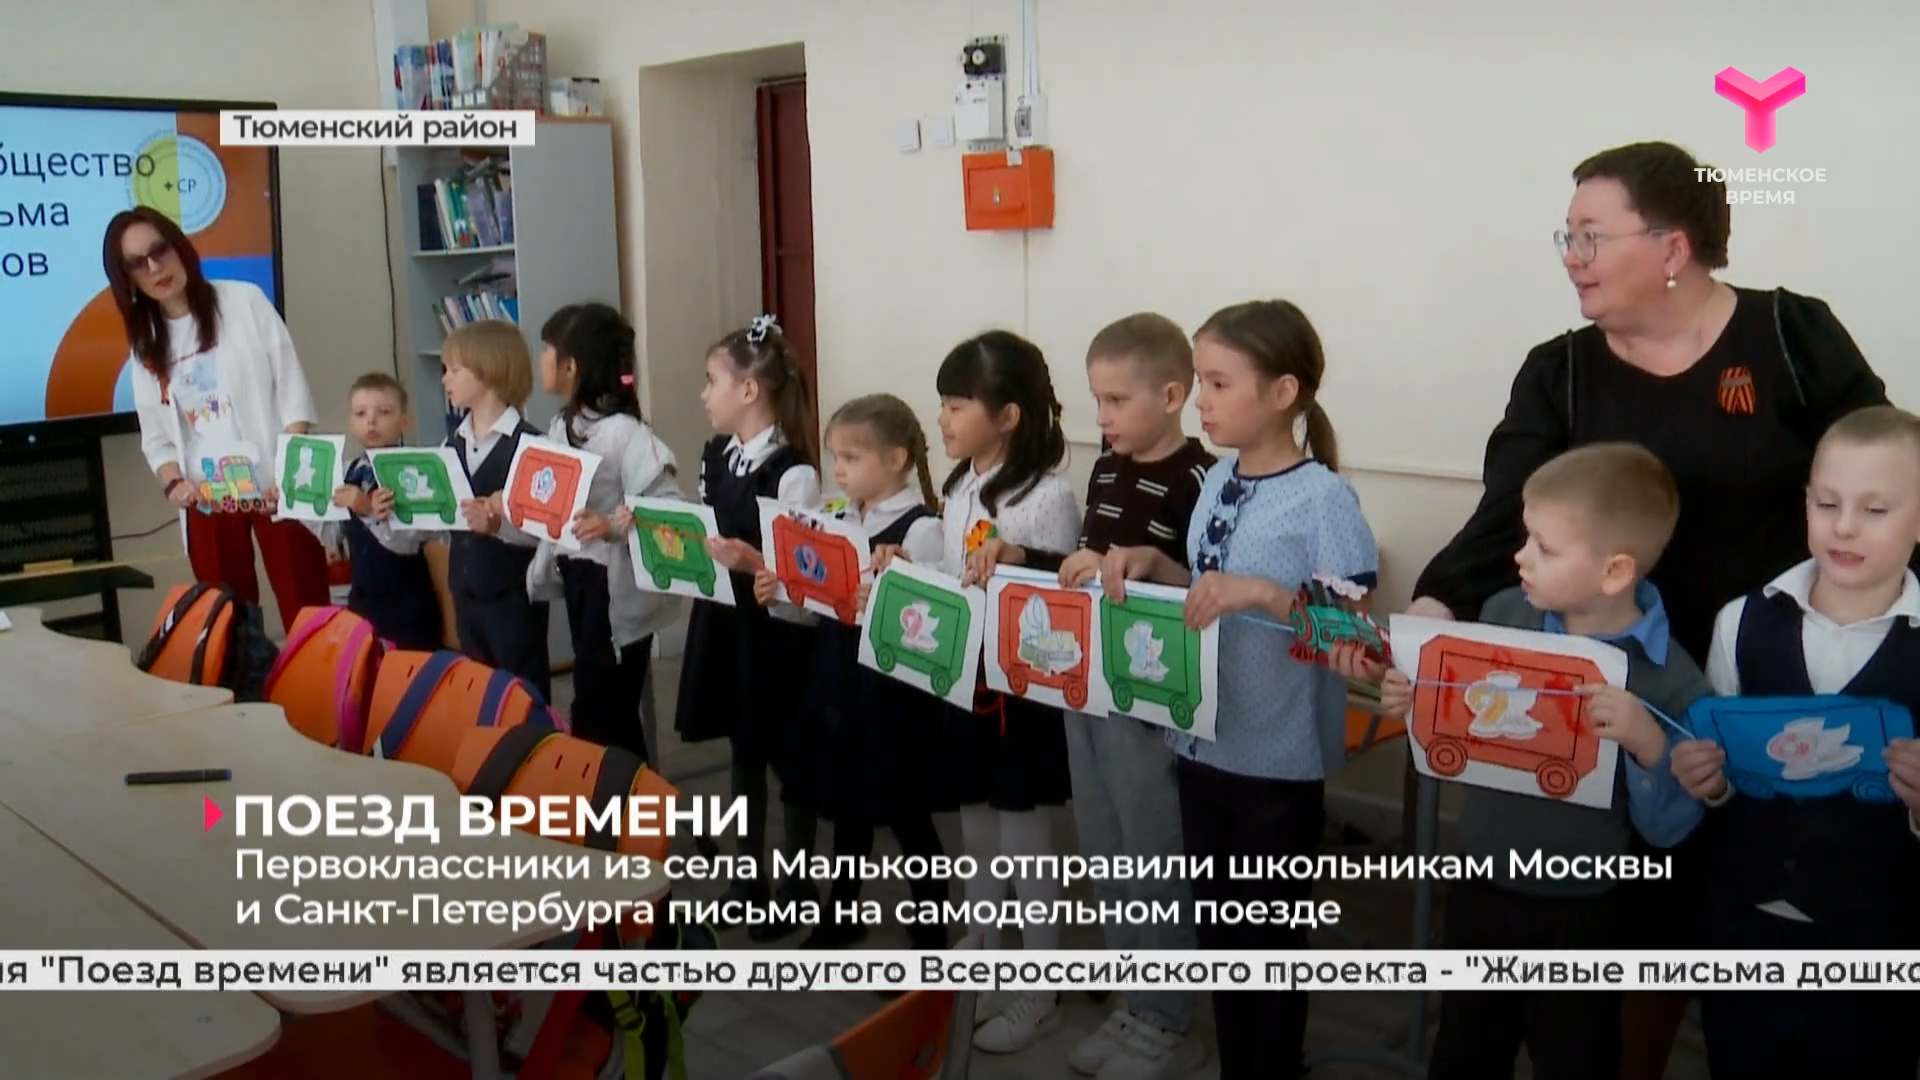 Первоклассники из села Мальково отправили школьникам Москвы и Санкт-Петербурга письма